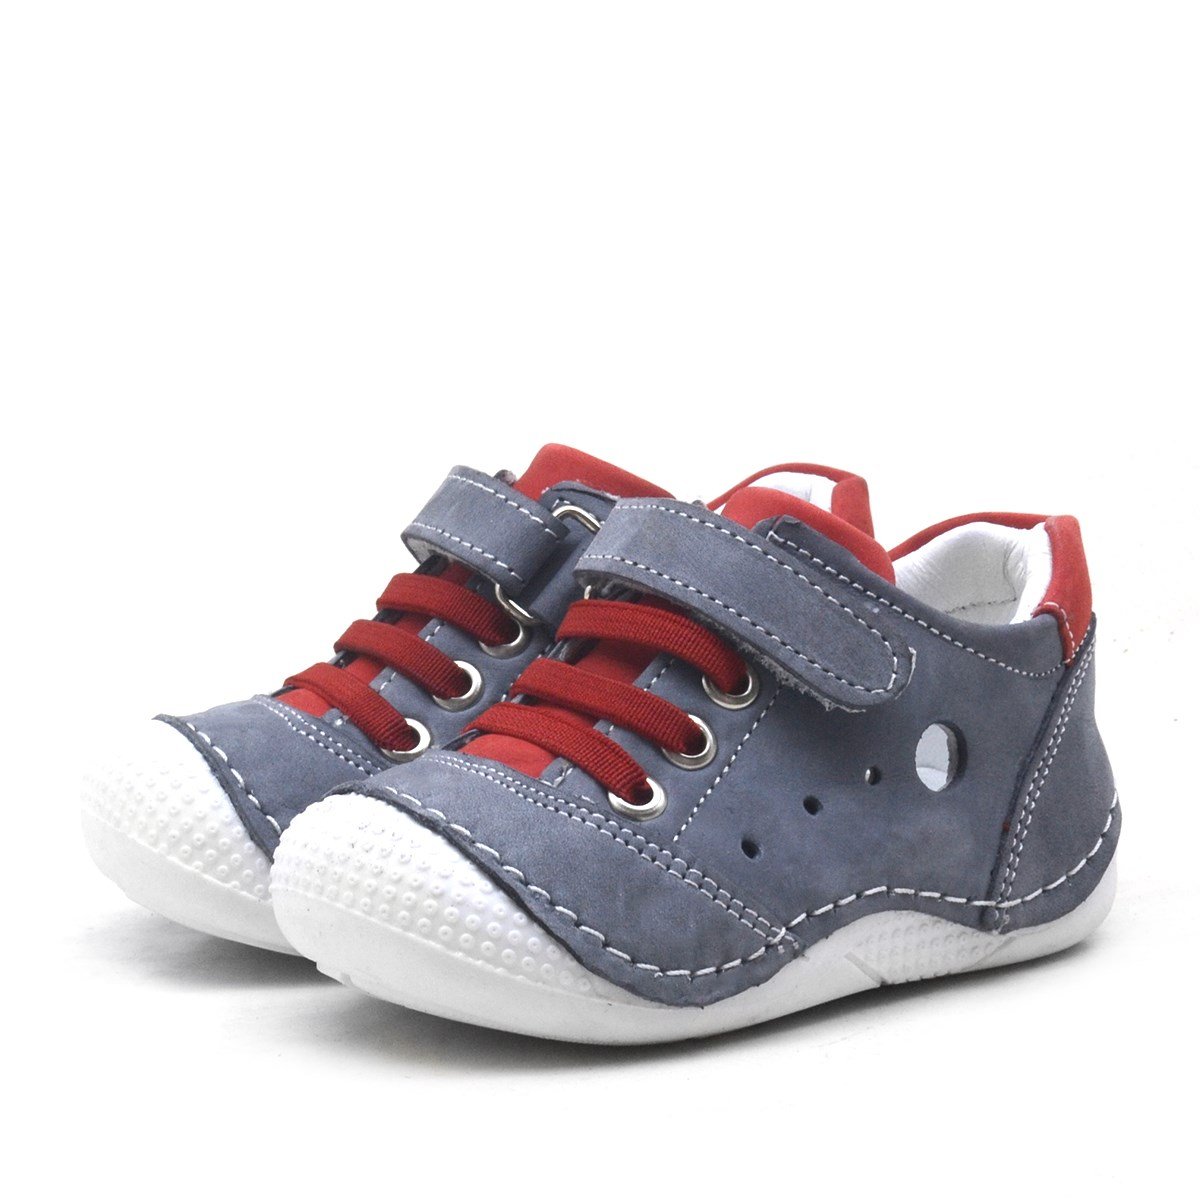 Hakiki Deri Cırtlı Yazlık Erkek Bebek Ayakkabı - A409-GK-19